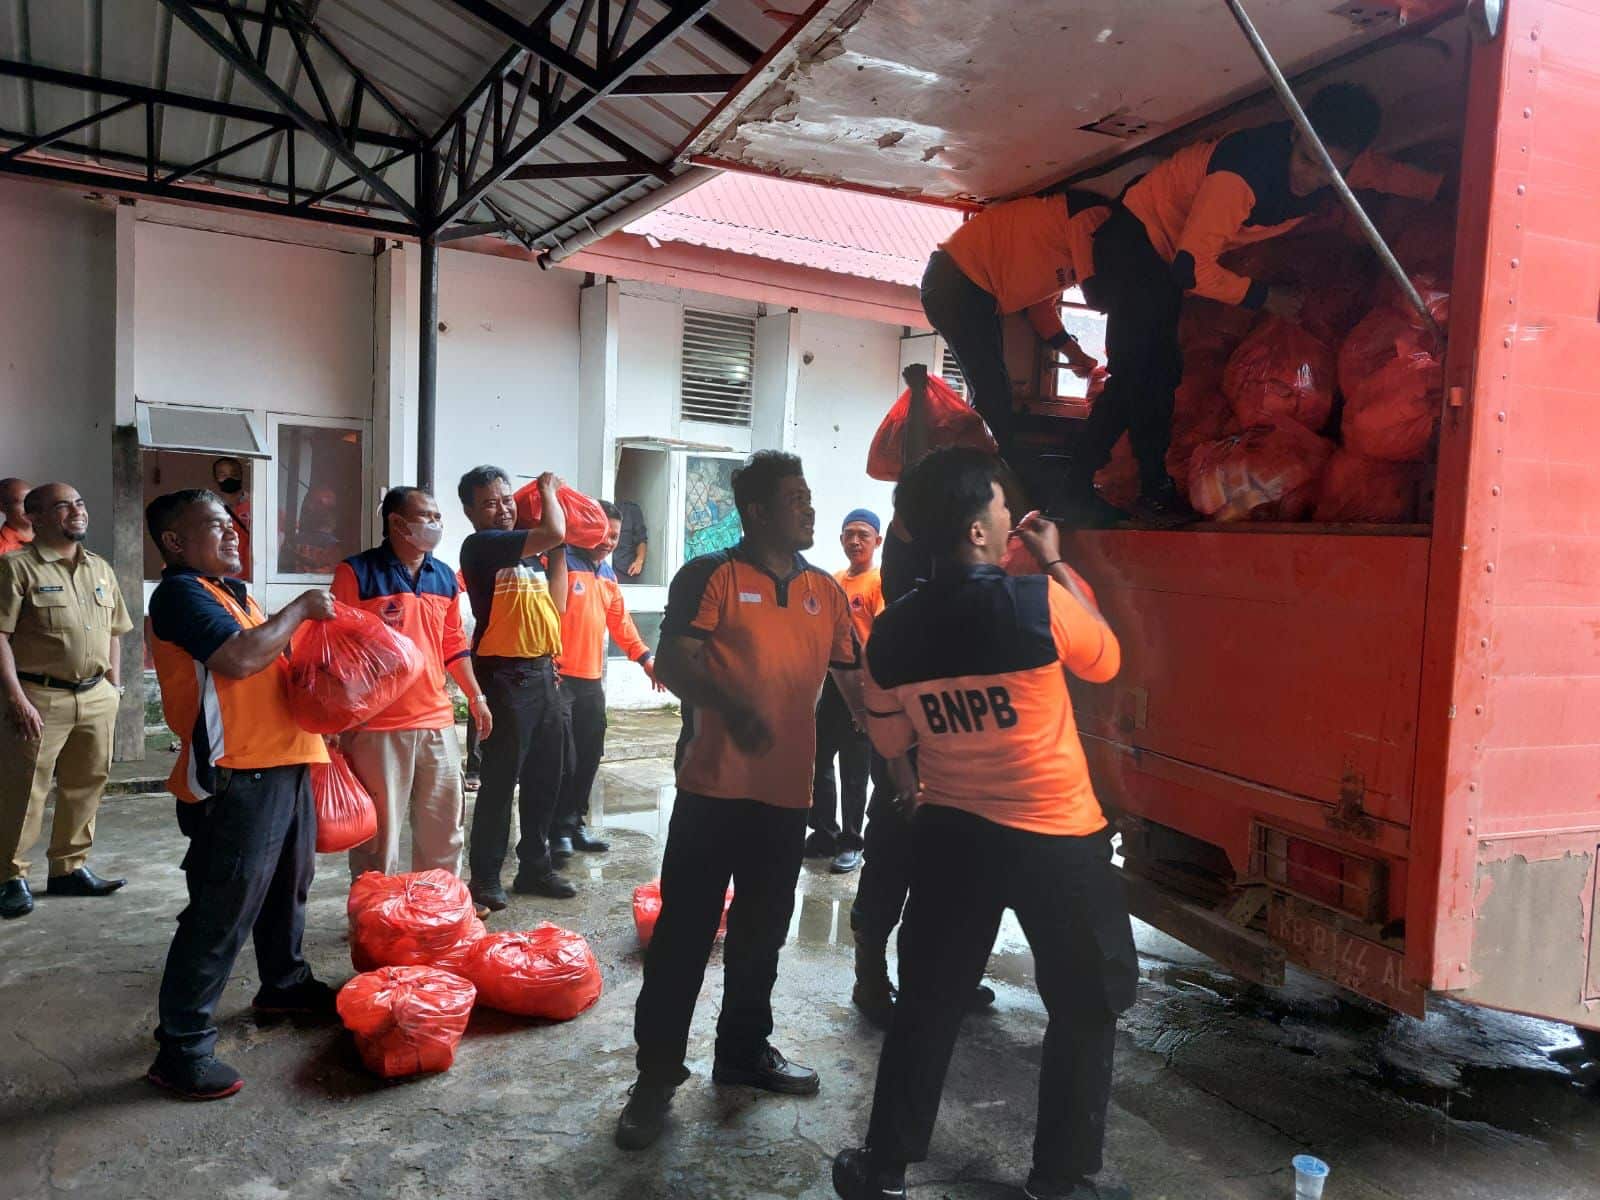 Tim BPBD Provinsi Kalbar sedang memasukan paket bantuan dari Pemprov Kalbar ke truk untuk didistribusikan ke daerah terdampak banjir di Kota Singkawang, Bengkayang dan Sambas. (Foto: BPBD)